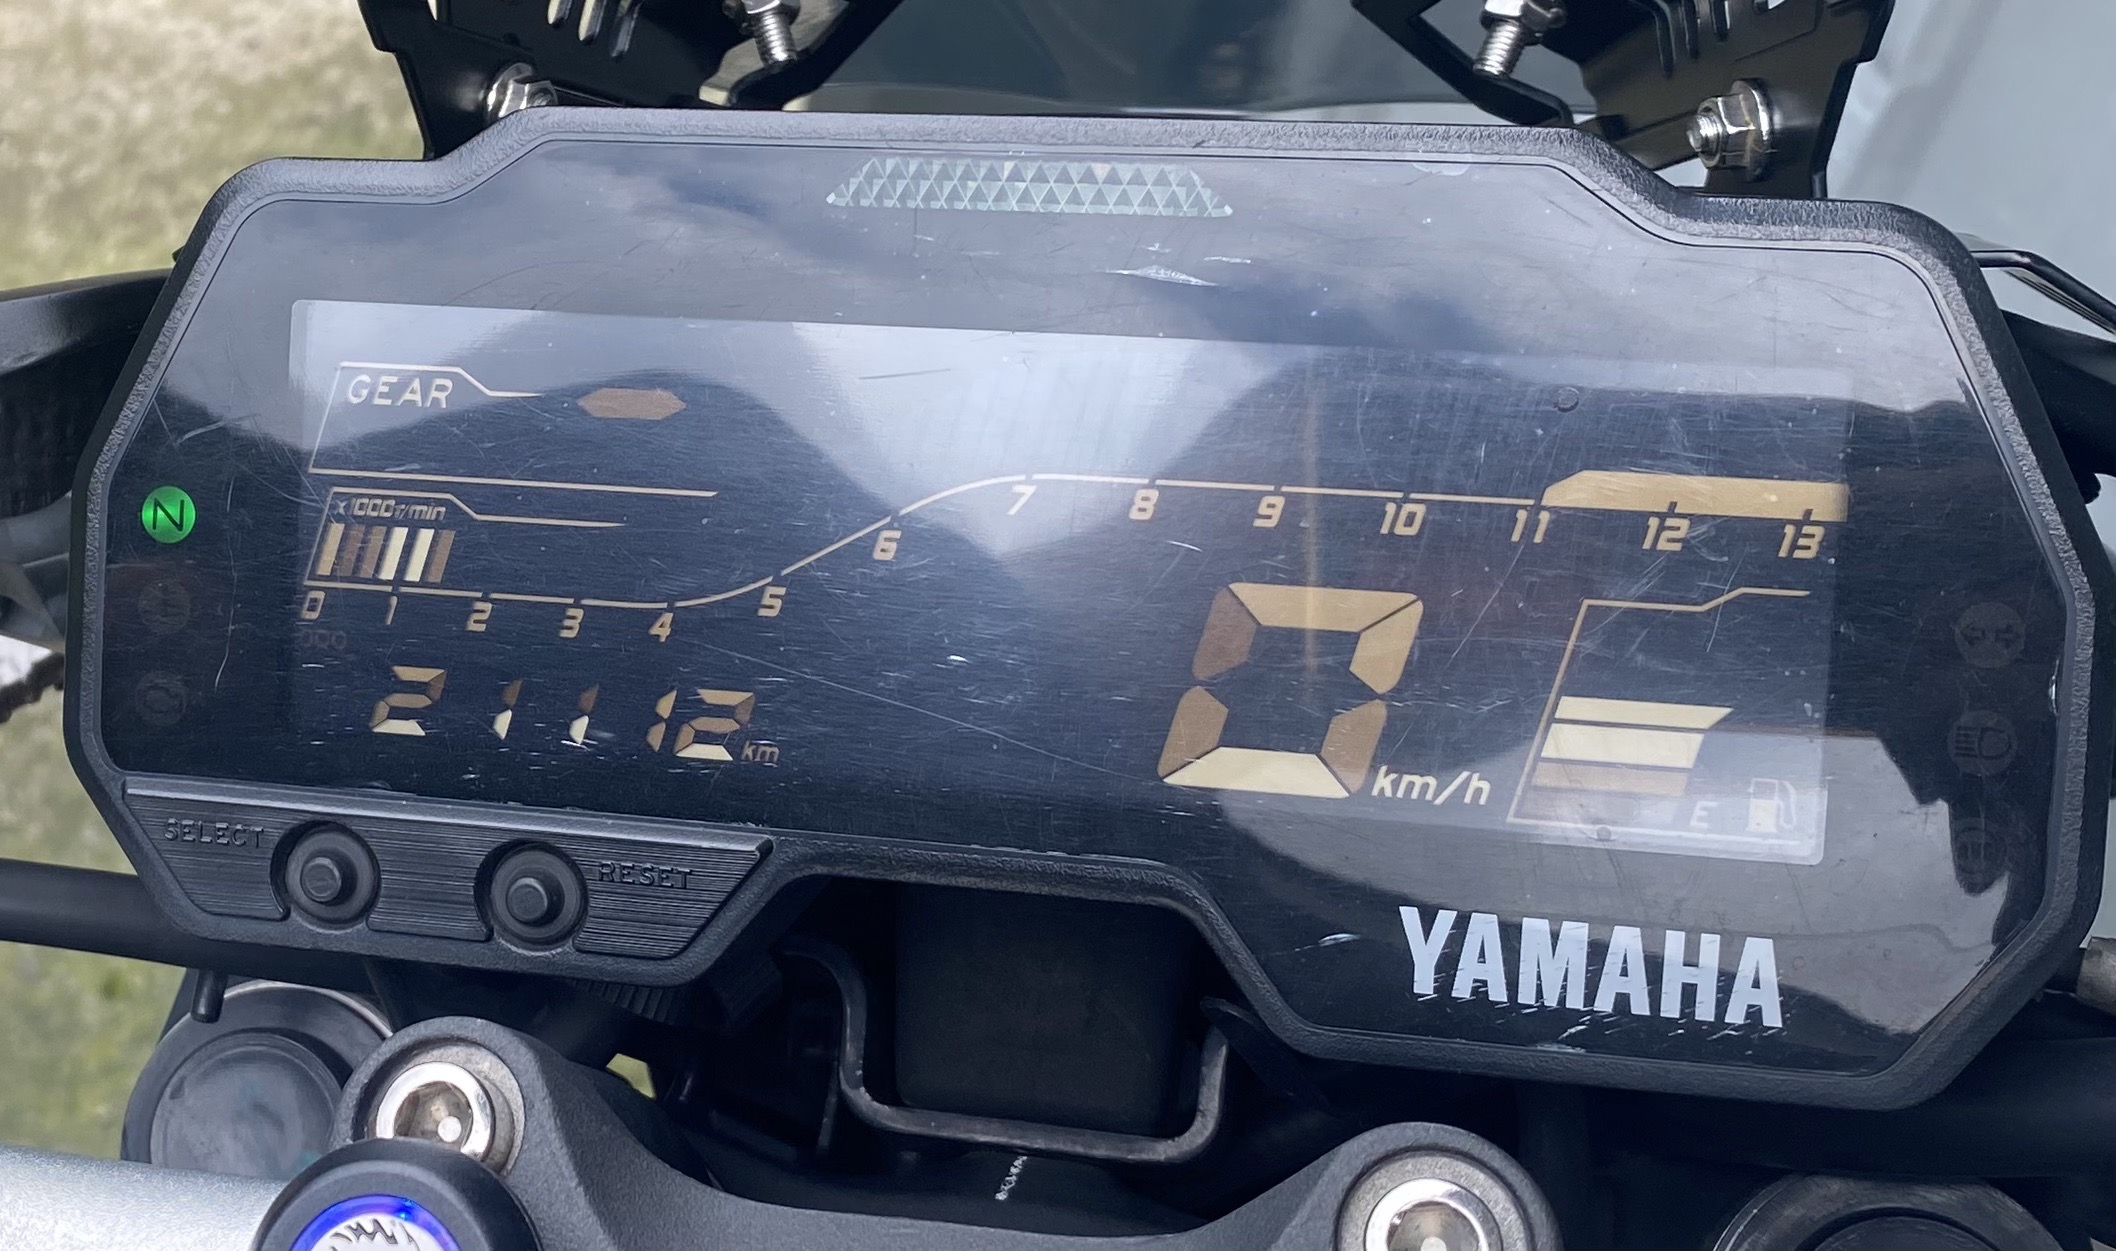 YAMAHA MT-15 - 中古/二手車出售中 MT15 眾多改裝:行車紀錄器、碳纖維面罩、小風鏡、左右拉桿、改裝後擋泥板、短牌架&後方向燈、FireStom全段排氣管 | Motoshen大聖二輪廣場